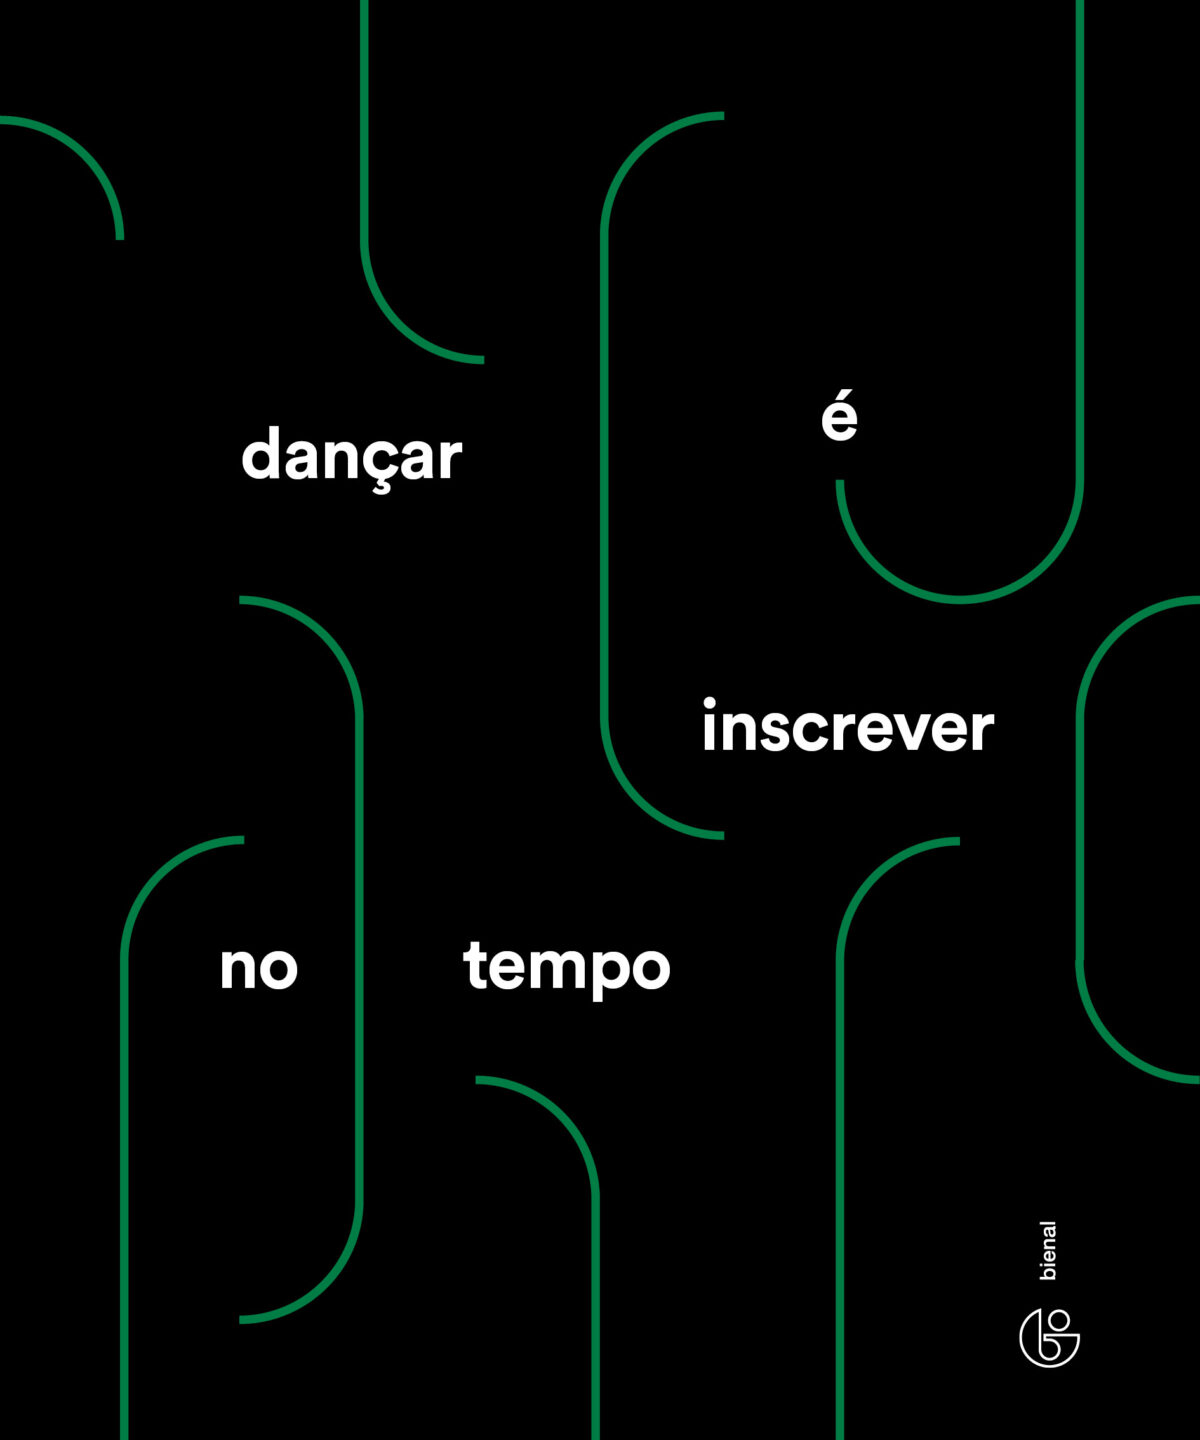 Capa da publicação educativa da 35ª Bienal. A capa é preta com linhas verdes verticais, nela vem escrito "dançar é inscrever no tempo" em branco e no canto inferior direito há o logo da Bienal.